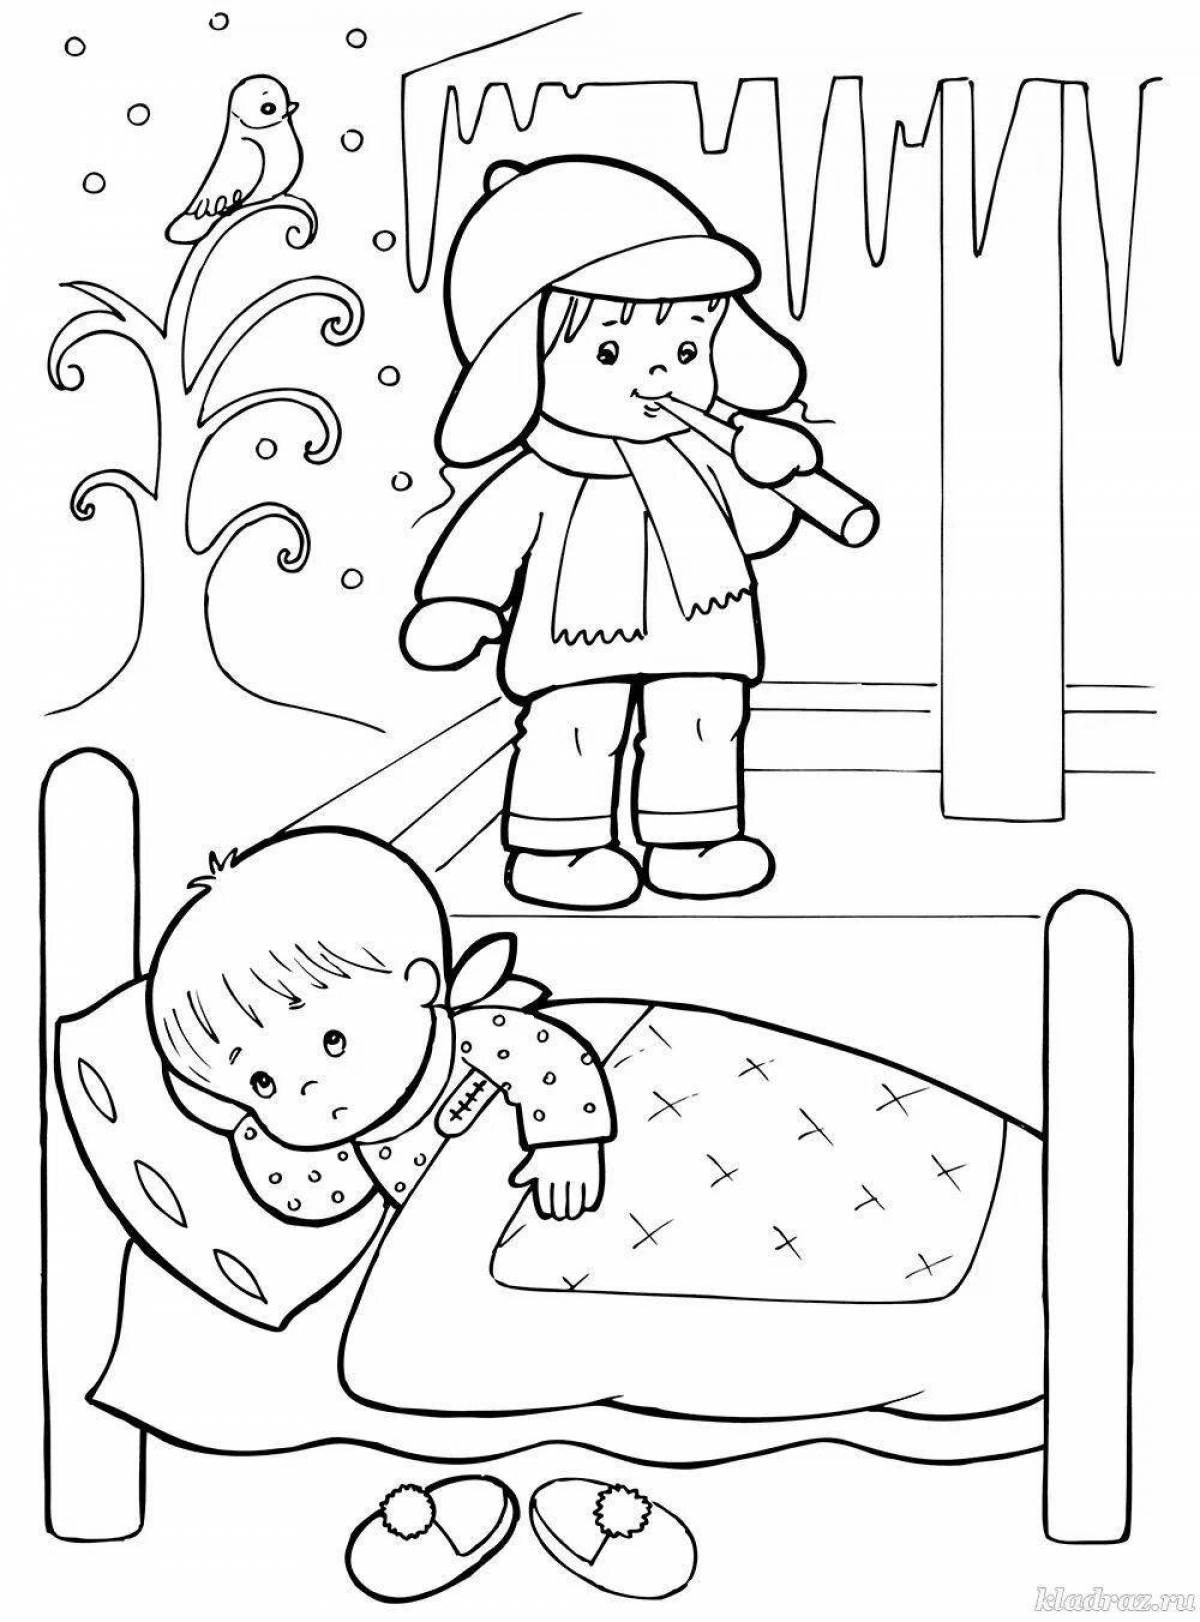 Child safety in winter #1